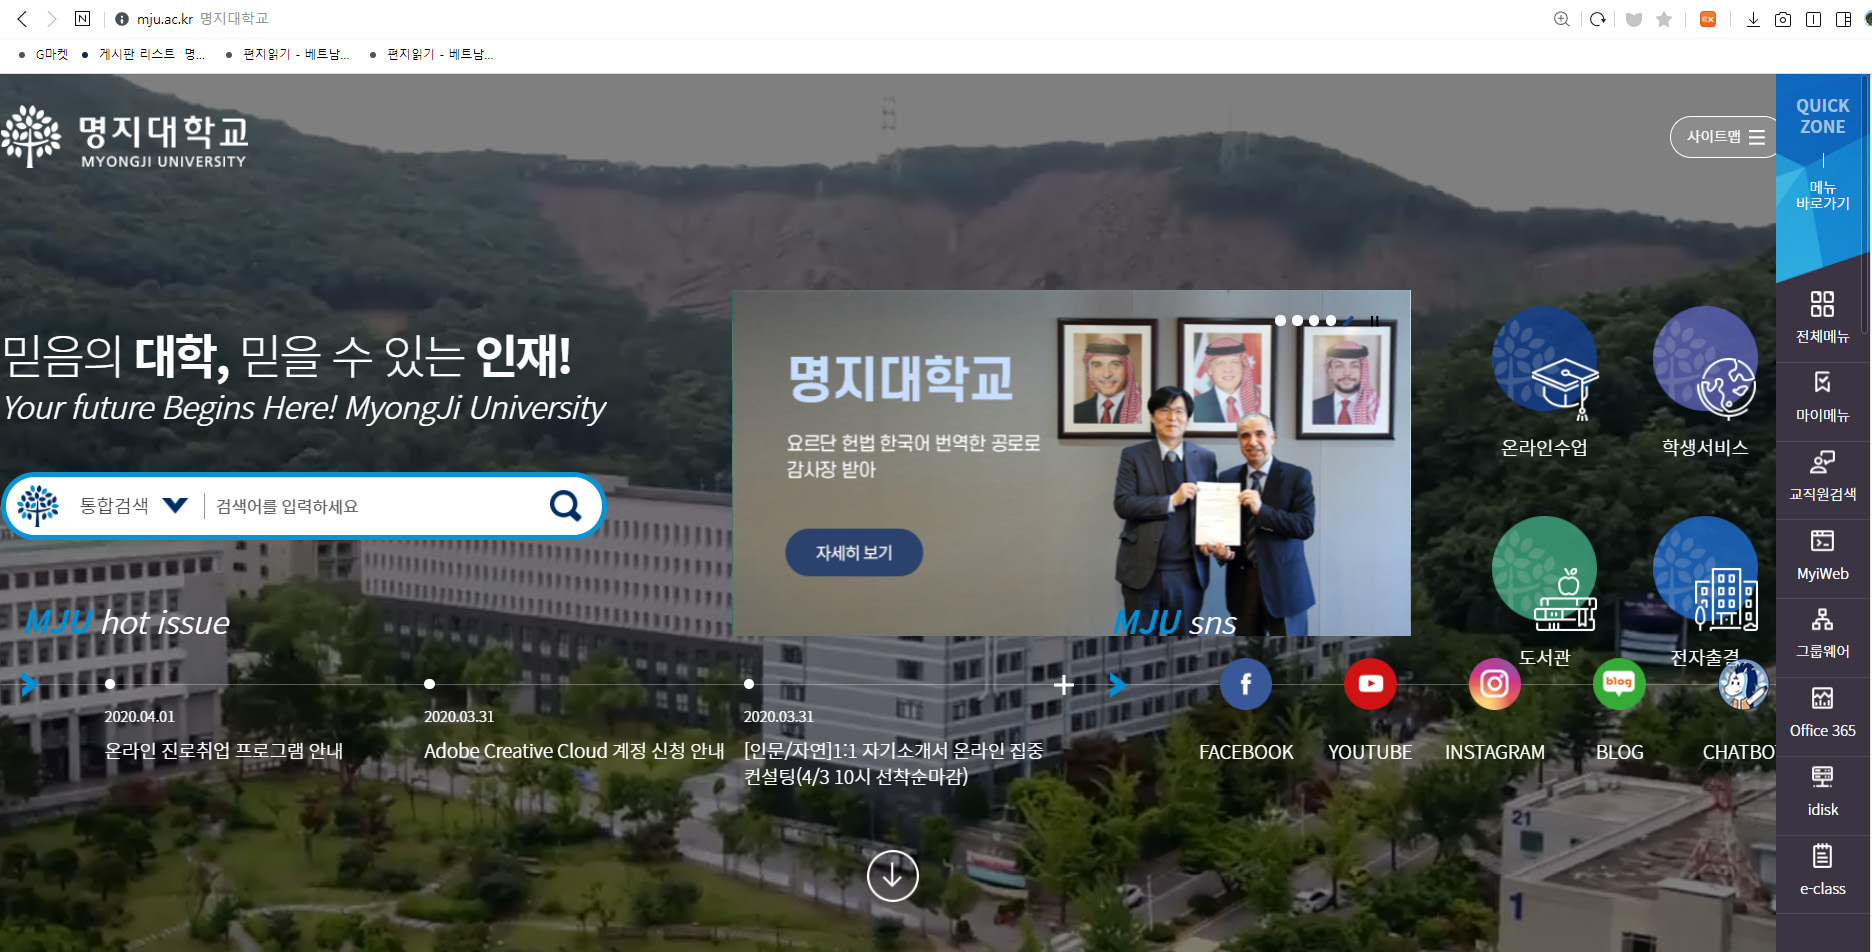 명지대학교, 학교 공식 홈페이지 리뉴얼 오픈 첨부 이미지